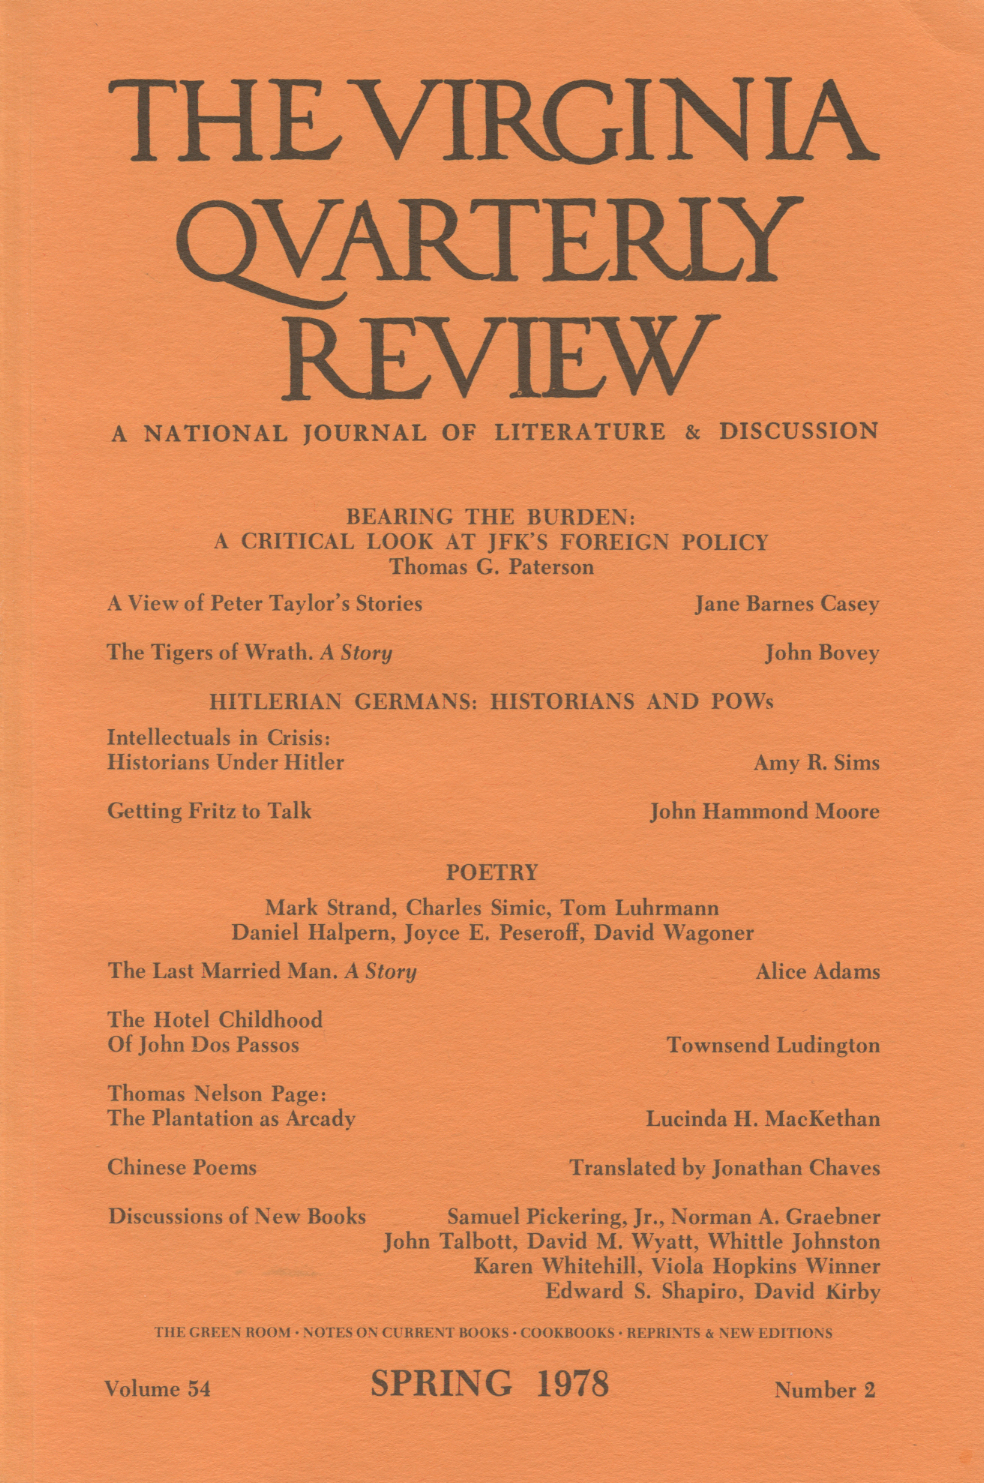 Virginia Quarterly Review, Spring 1978 cover